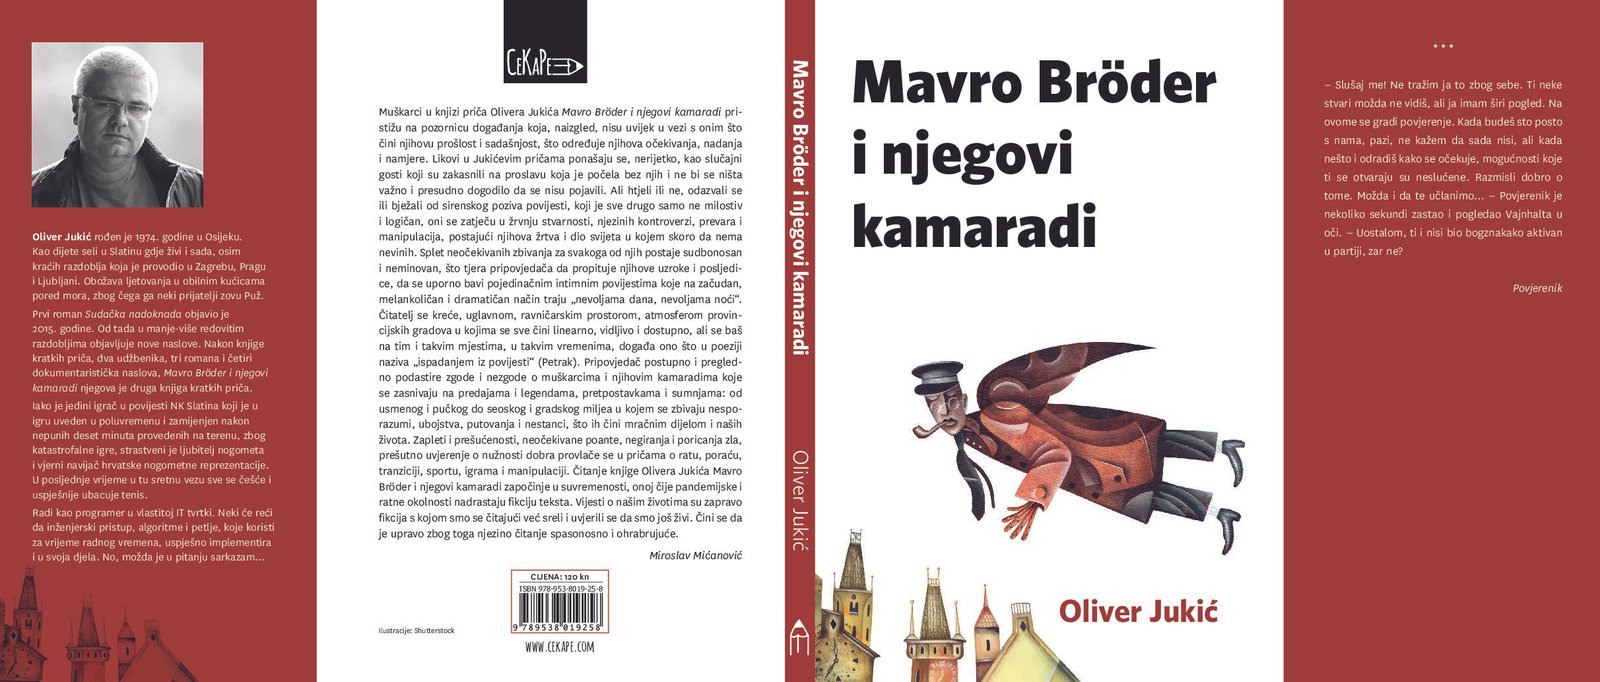 Nova knjiga, Oliver Jukić, Mavro Brödar i njegovi kamaradi